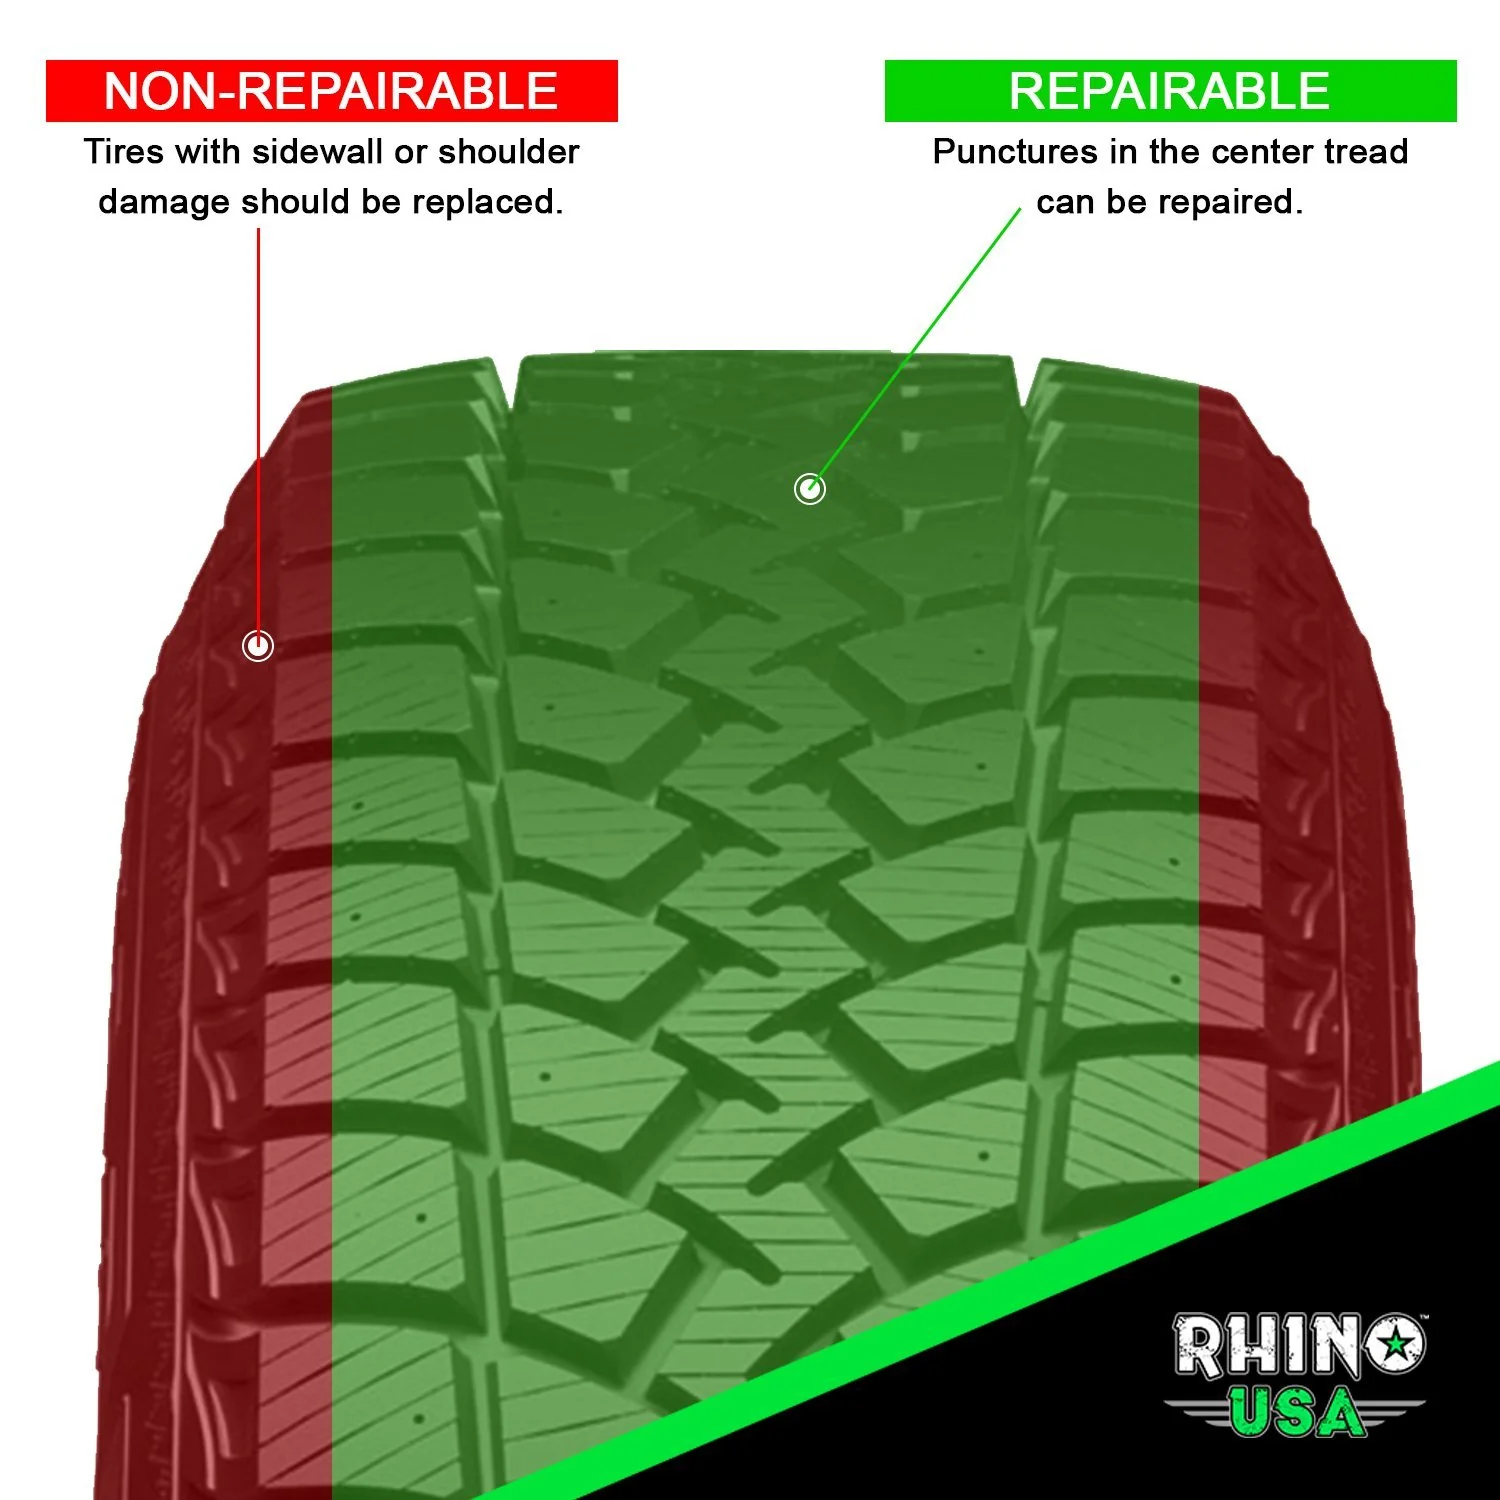 rhino usa 14 piece compact tire repair kit 1.jpg